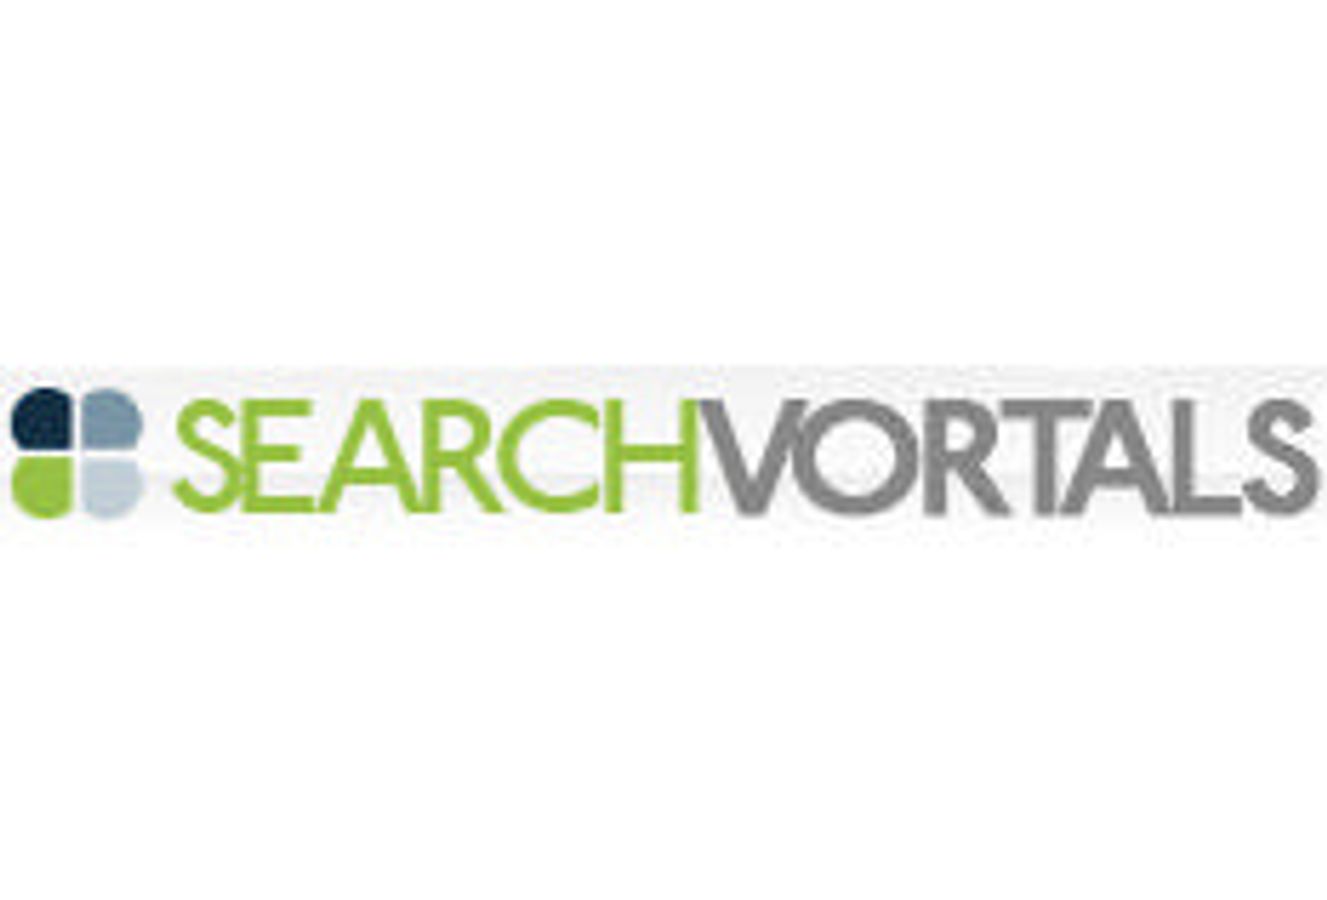 Search Vortals, Inc.